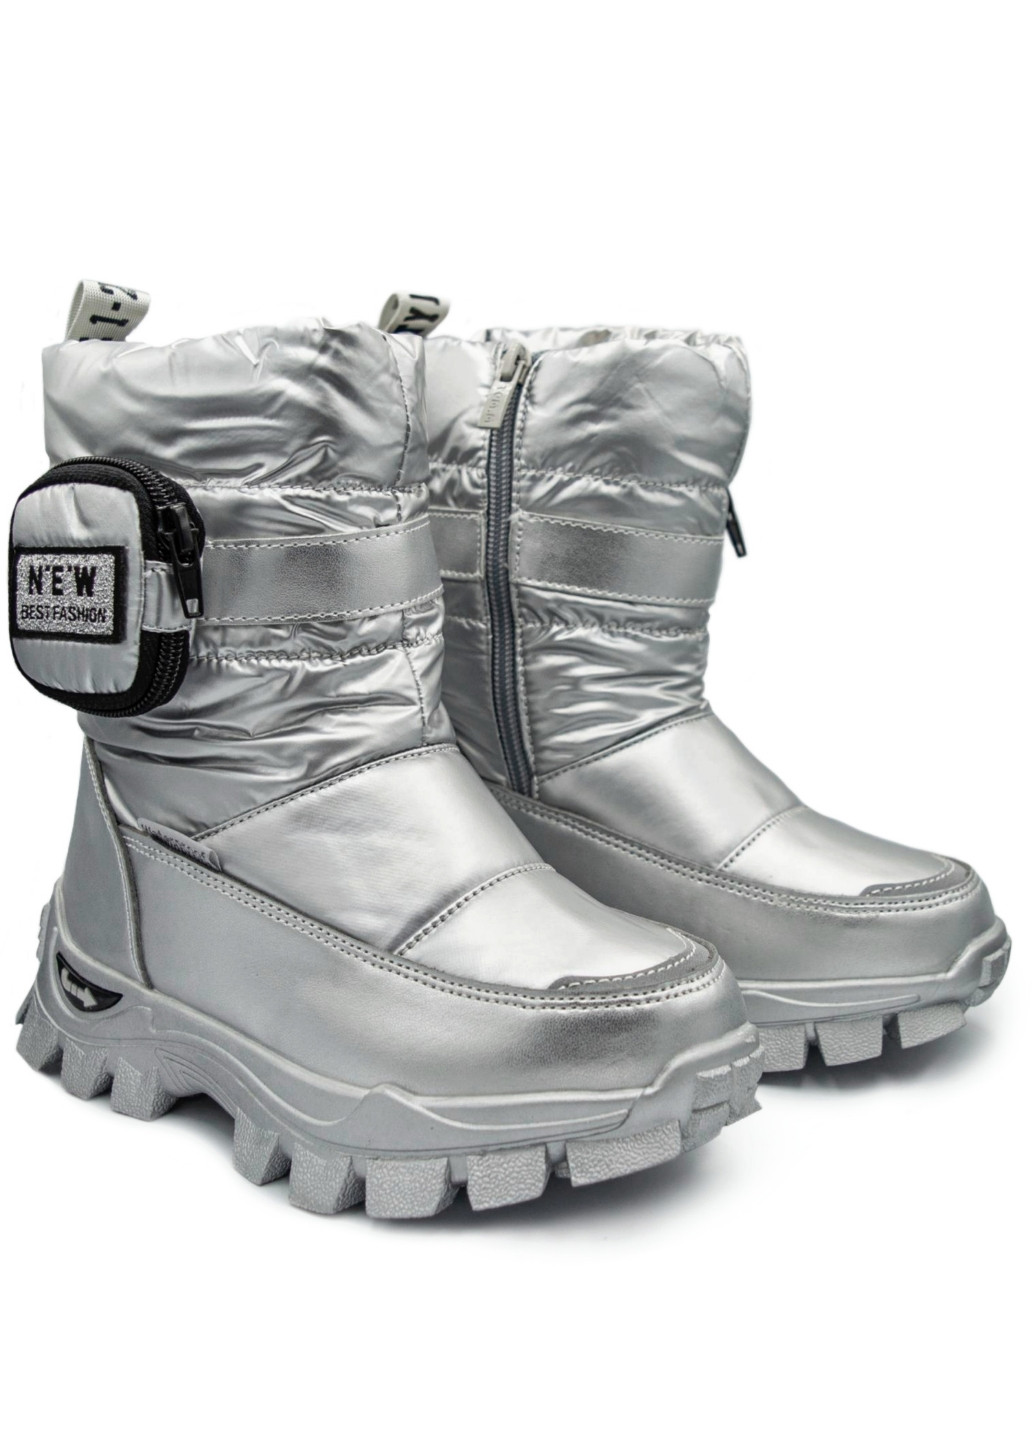 Зимові чоботи, дутики для дівчини, термовзуття, сноубутси, черевики, термо чоботи р .28-35 Том.М (254916691)